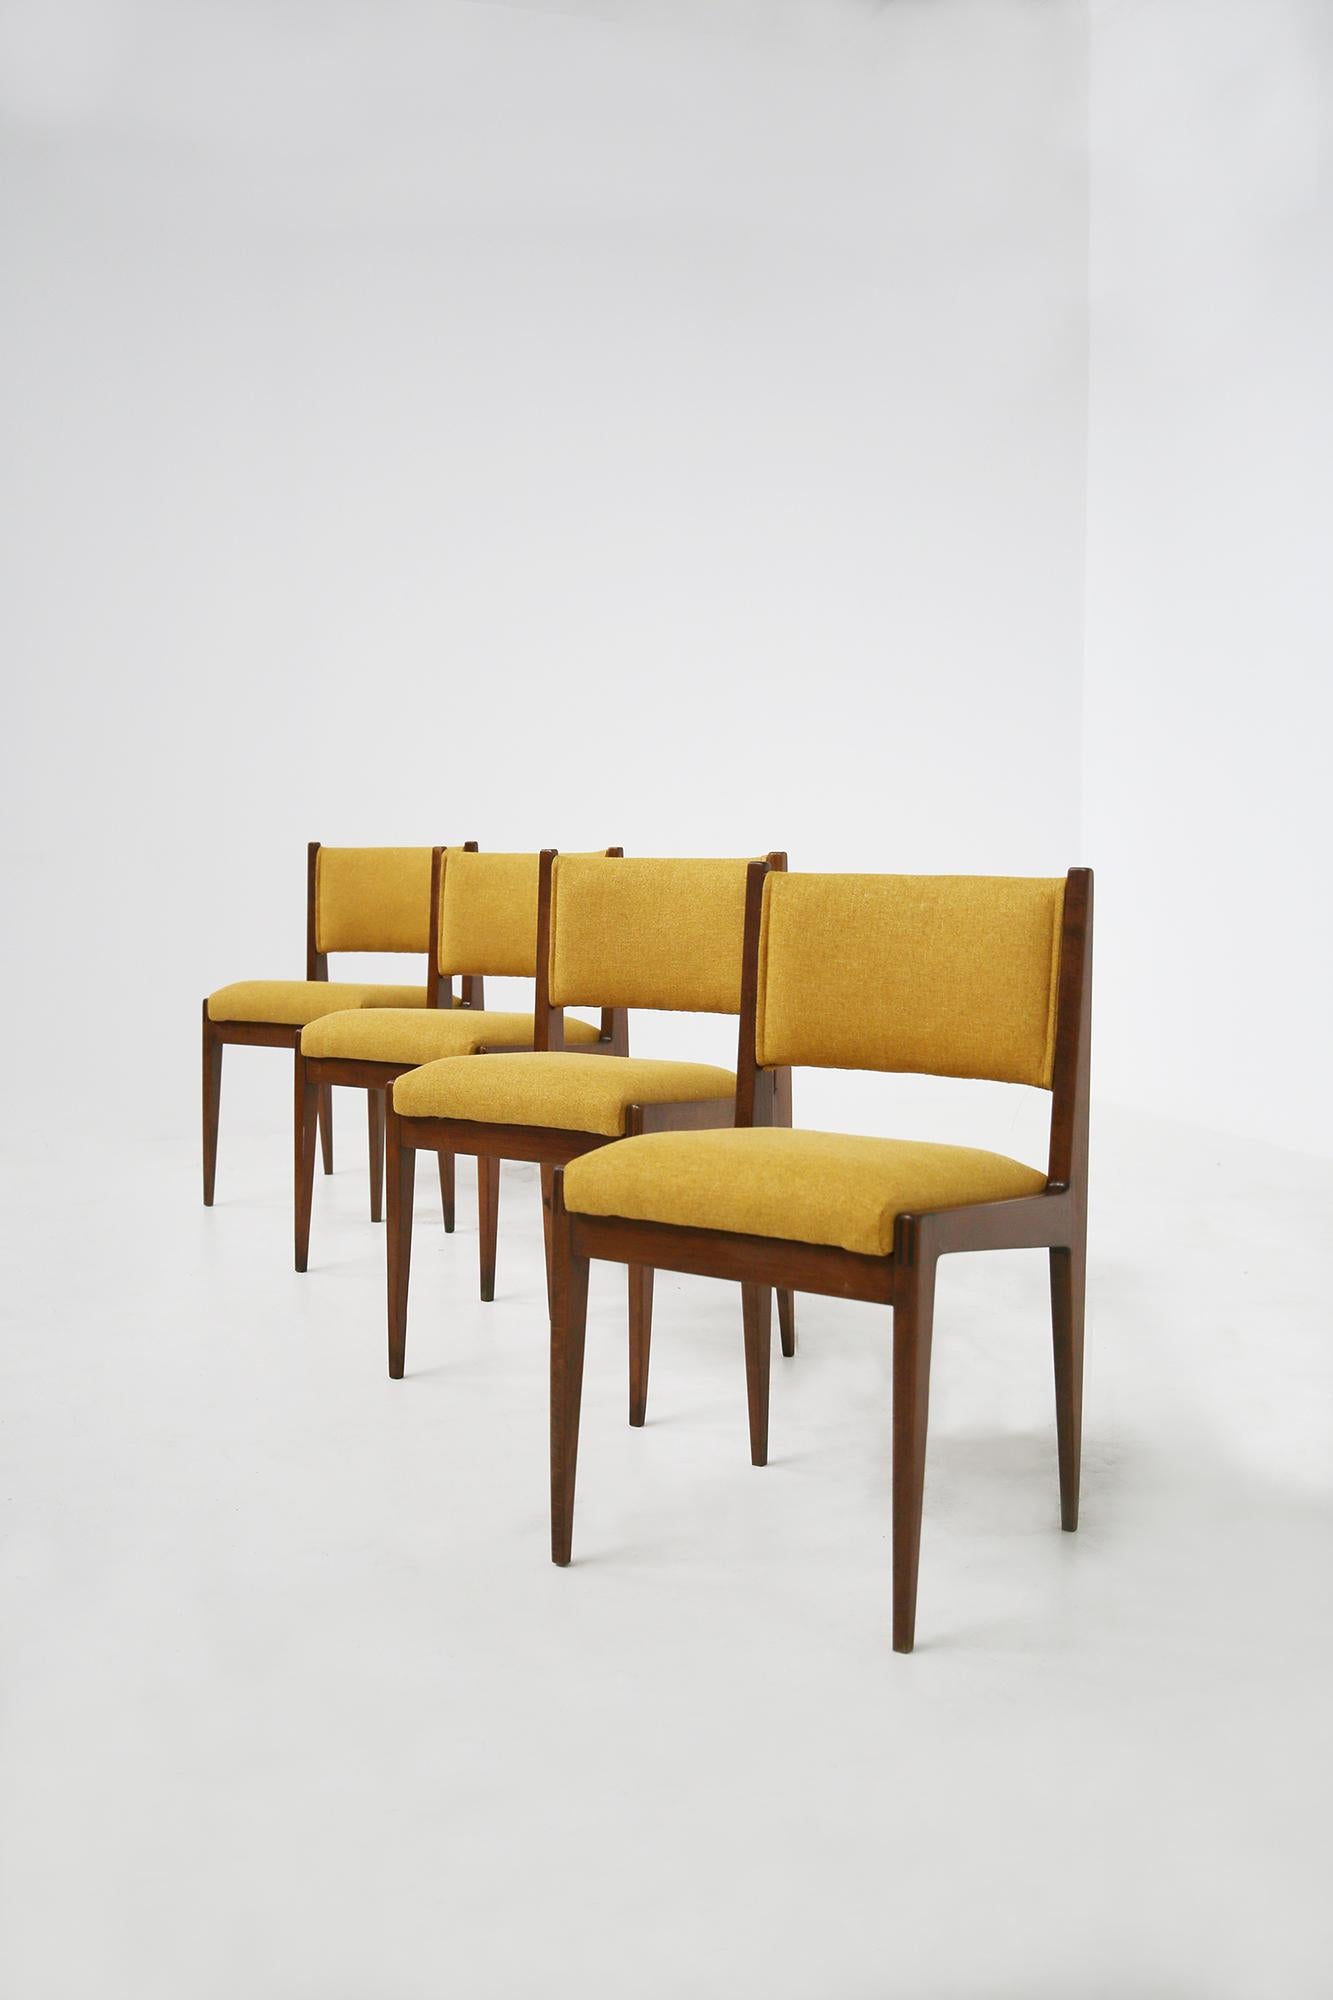 Set aus vier gelben Stühlen von Gianfranco Frattini für Bottega Ghianda, 1960er Jahre (Mitte des 20. Jahrhunderts)